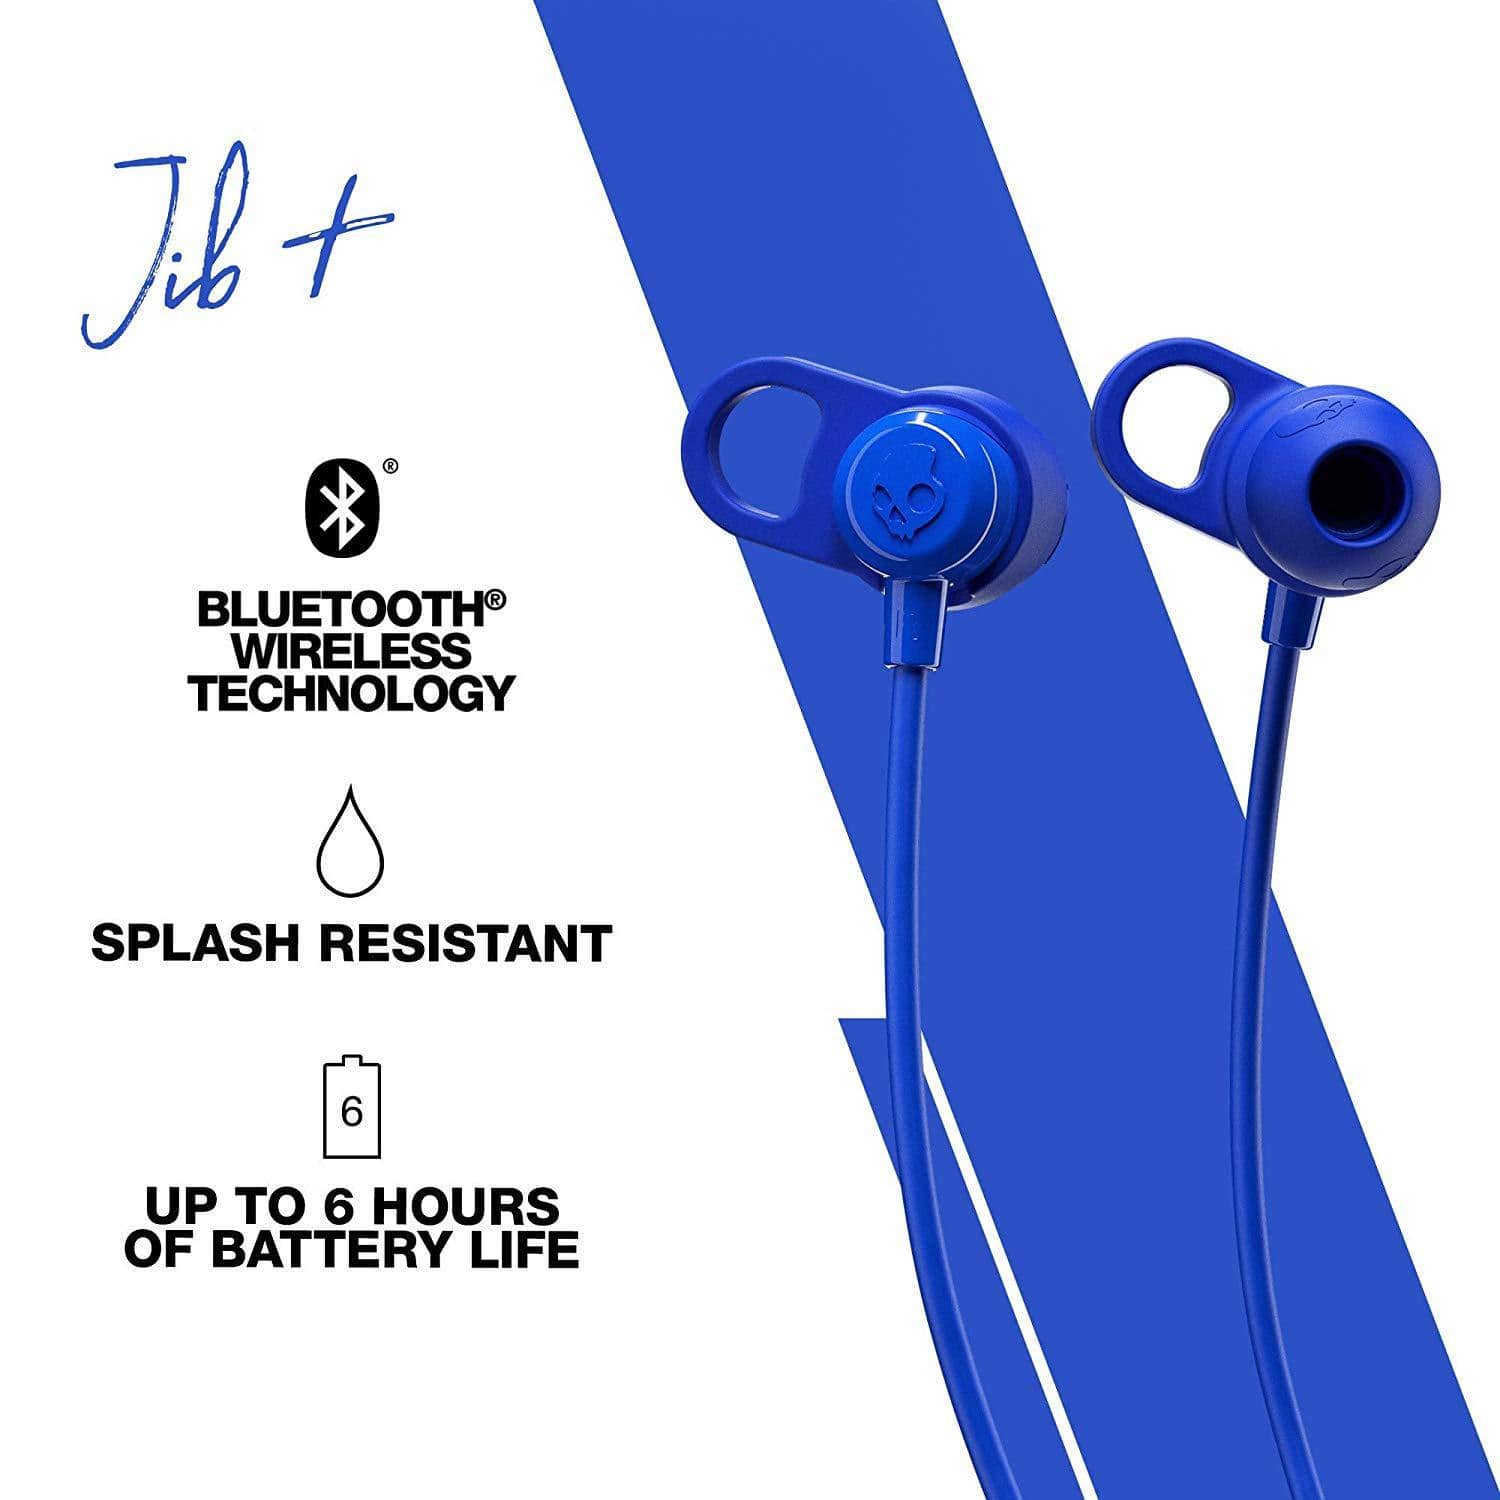 Skullcandy - Jib+ Wireless In-Ear Headphones-Bluetooth Headsets-dealsplant